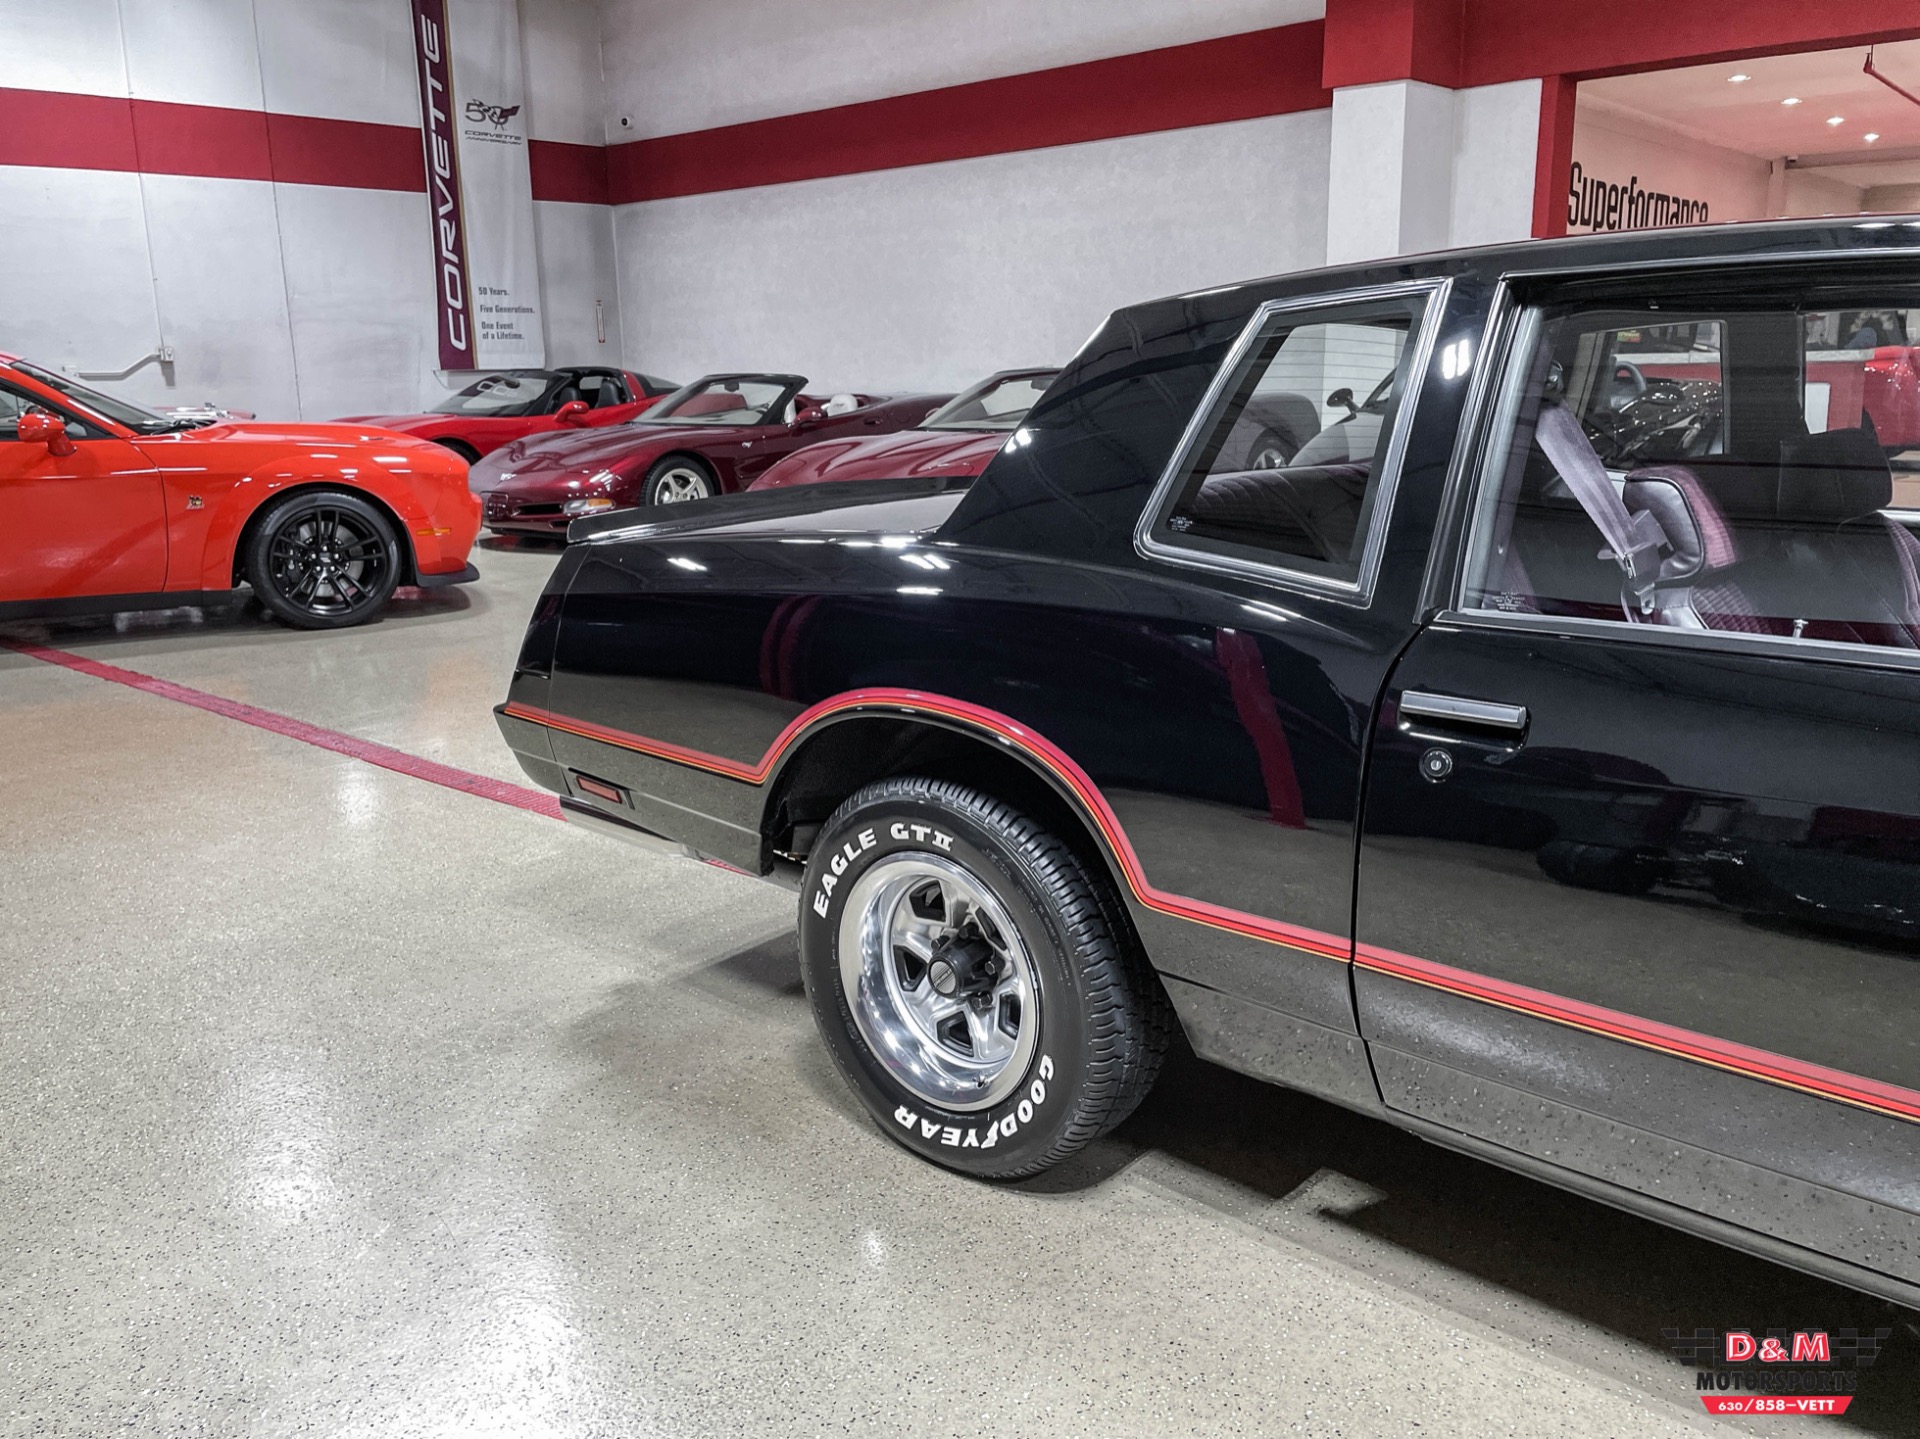 Used 1985 Chevrolet Monte Carlo SS | Glen Ellyn, IL